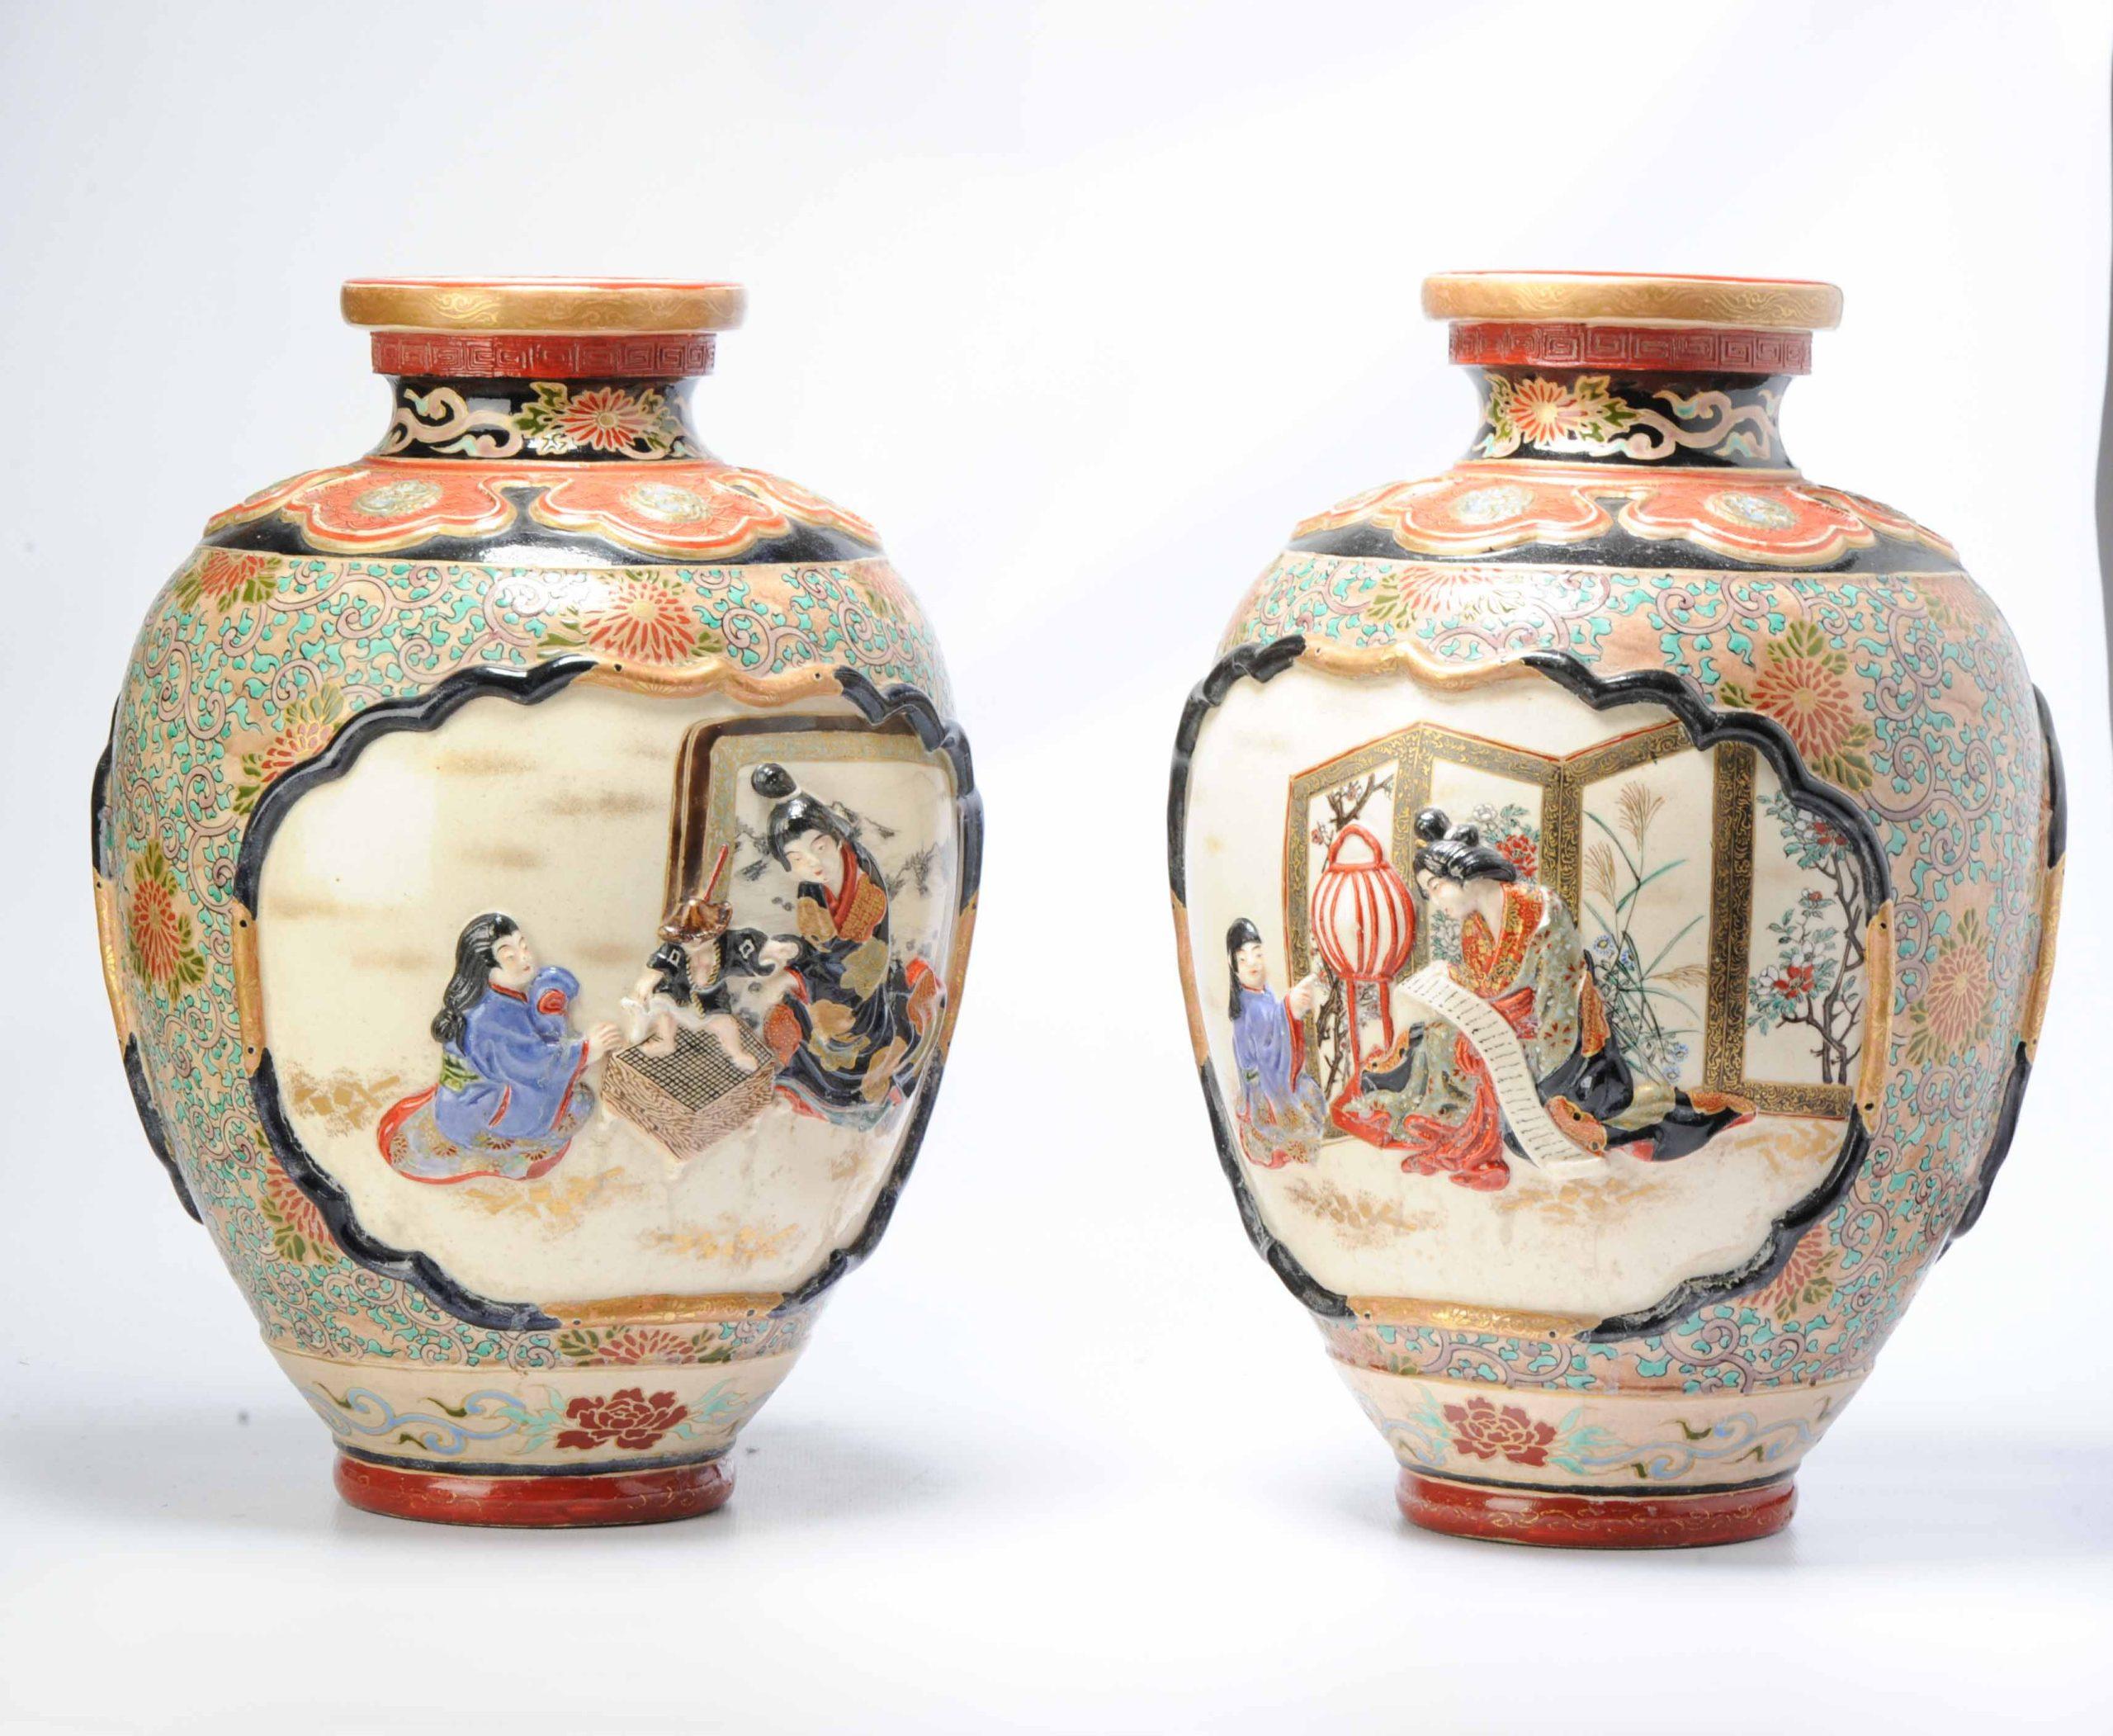 Paire de vases de forme balustre en faïence japonaise stsuma, moulés avec une scène de dames jouant au go et faisant de la calligraphie. Il y a un soulagement.

Non marqué

Informations complémentaires :
MATERIAL : Porcelaine et poterie
Région